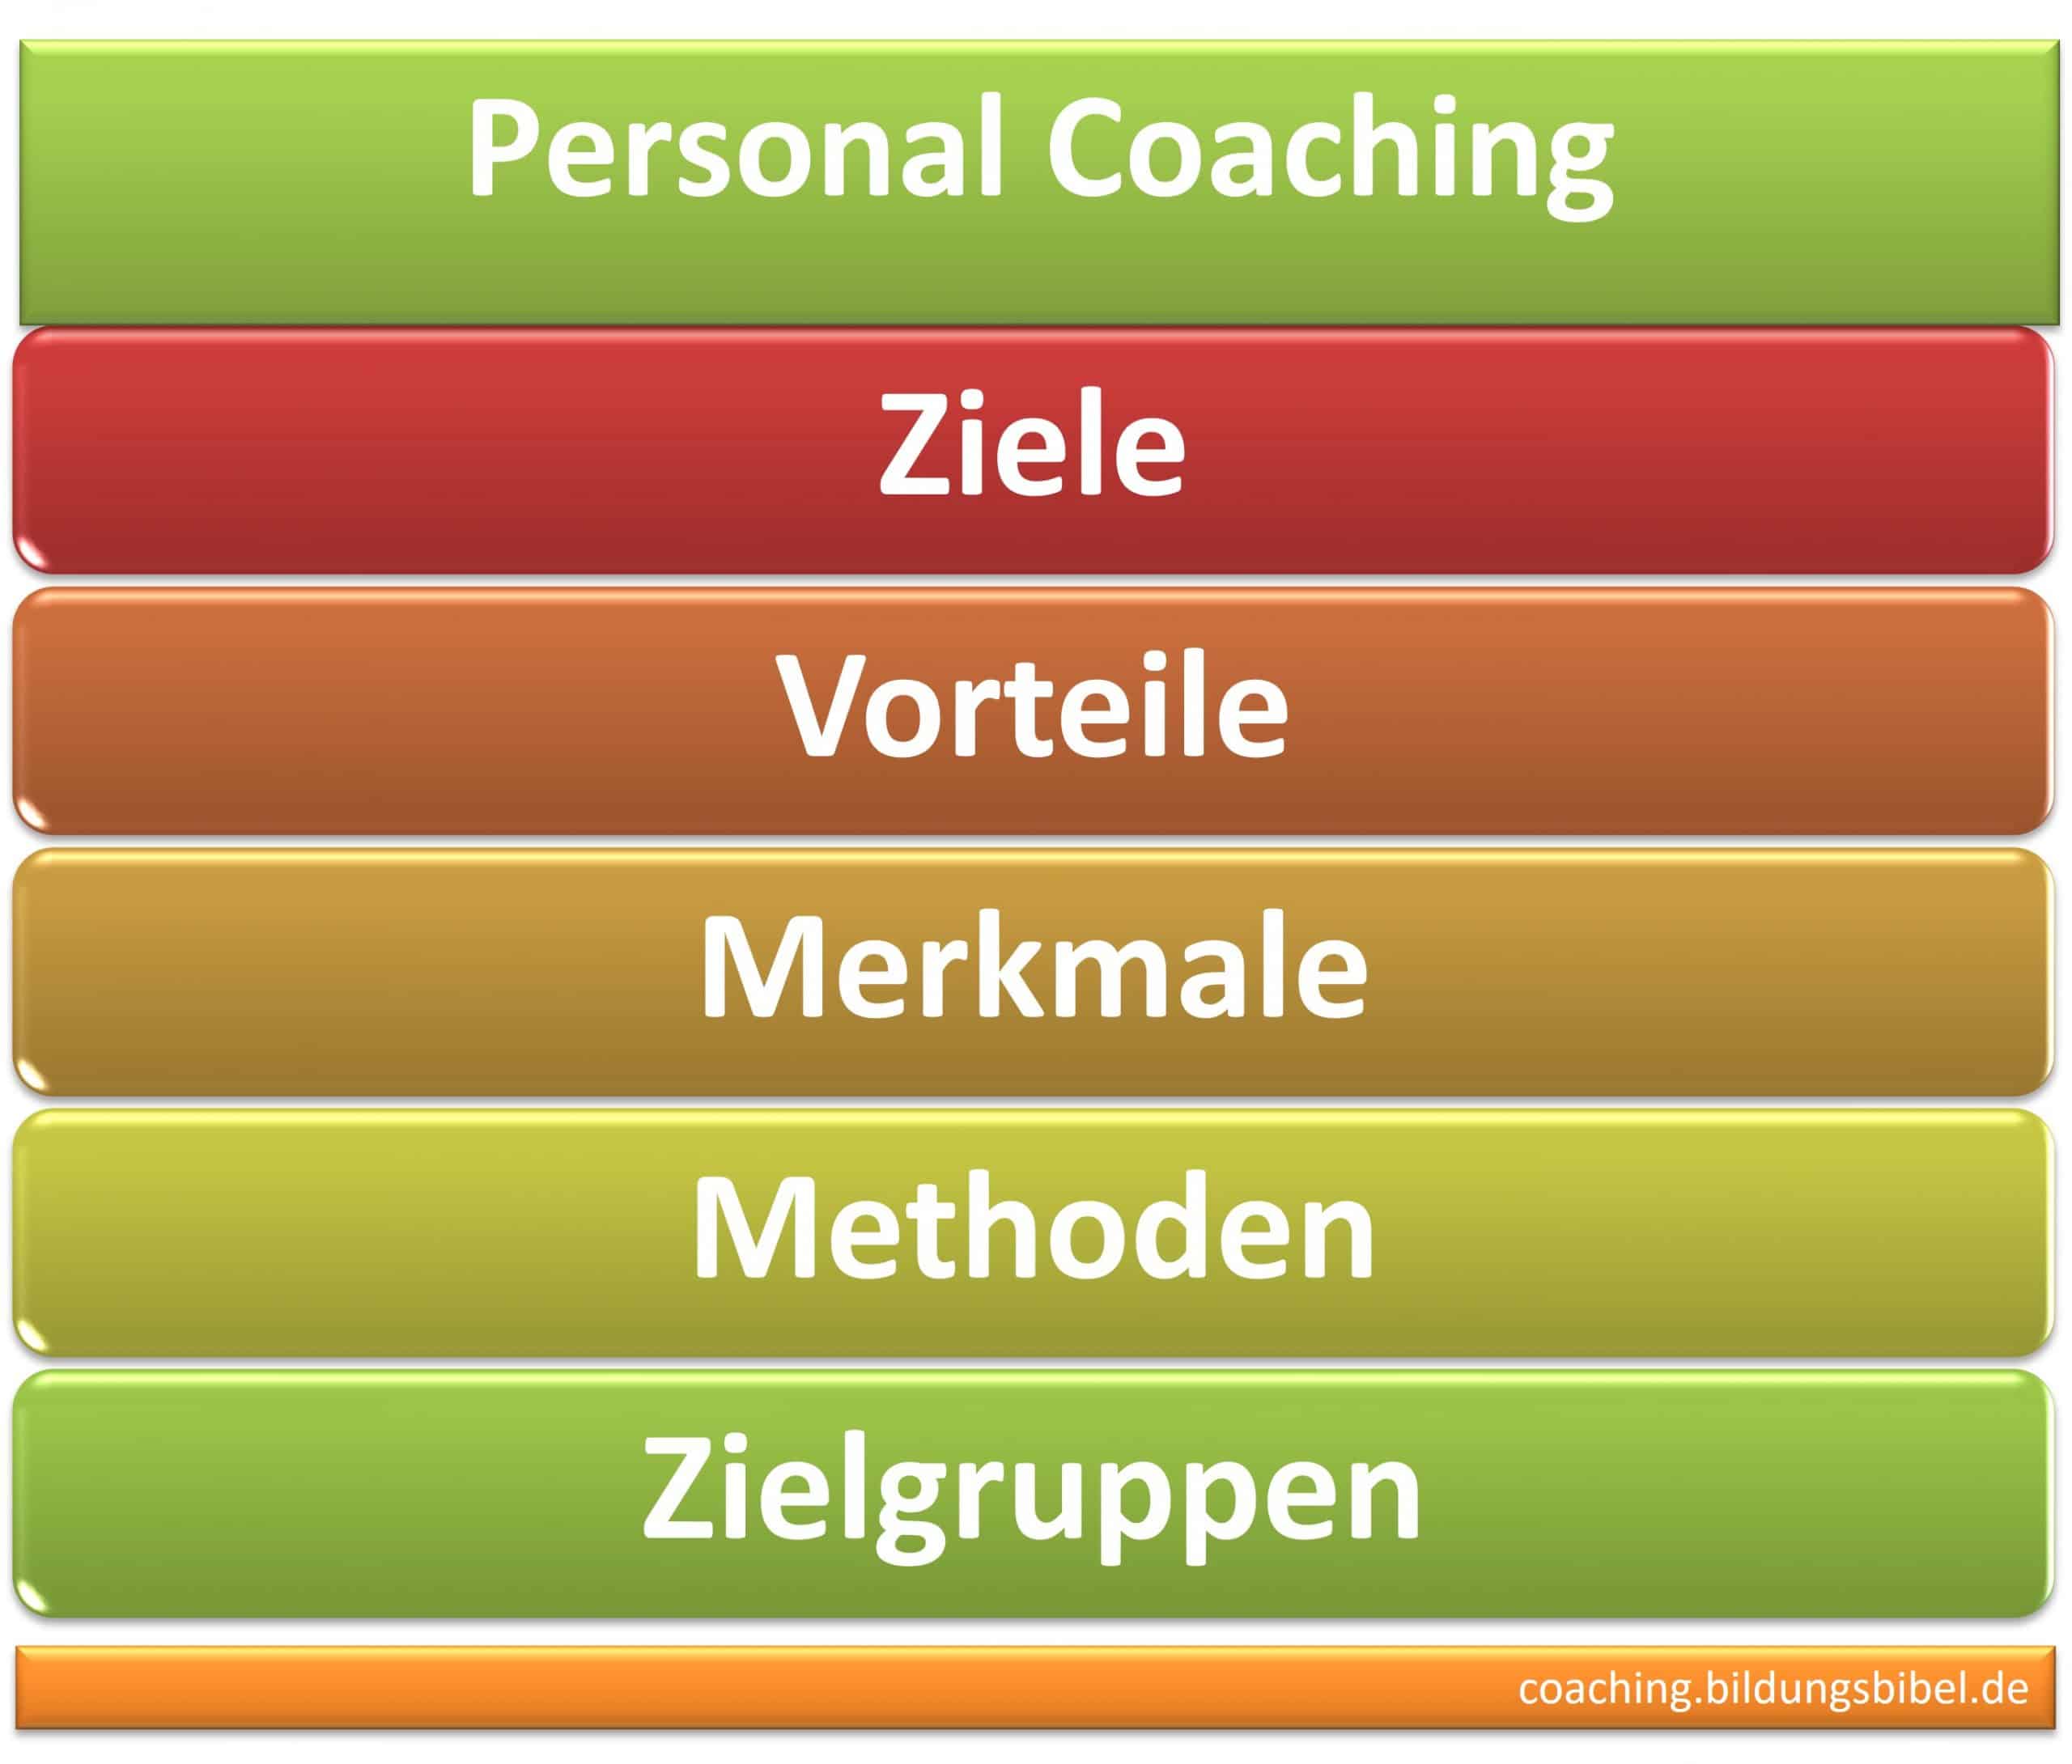 Personal Coaching, Ziele, Vorteile, Merkmale, Methoden und Zielgruppen, Führung, Kommunikation, Stress, Erfolg, Digital Coaching und weitere.